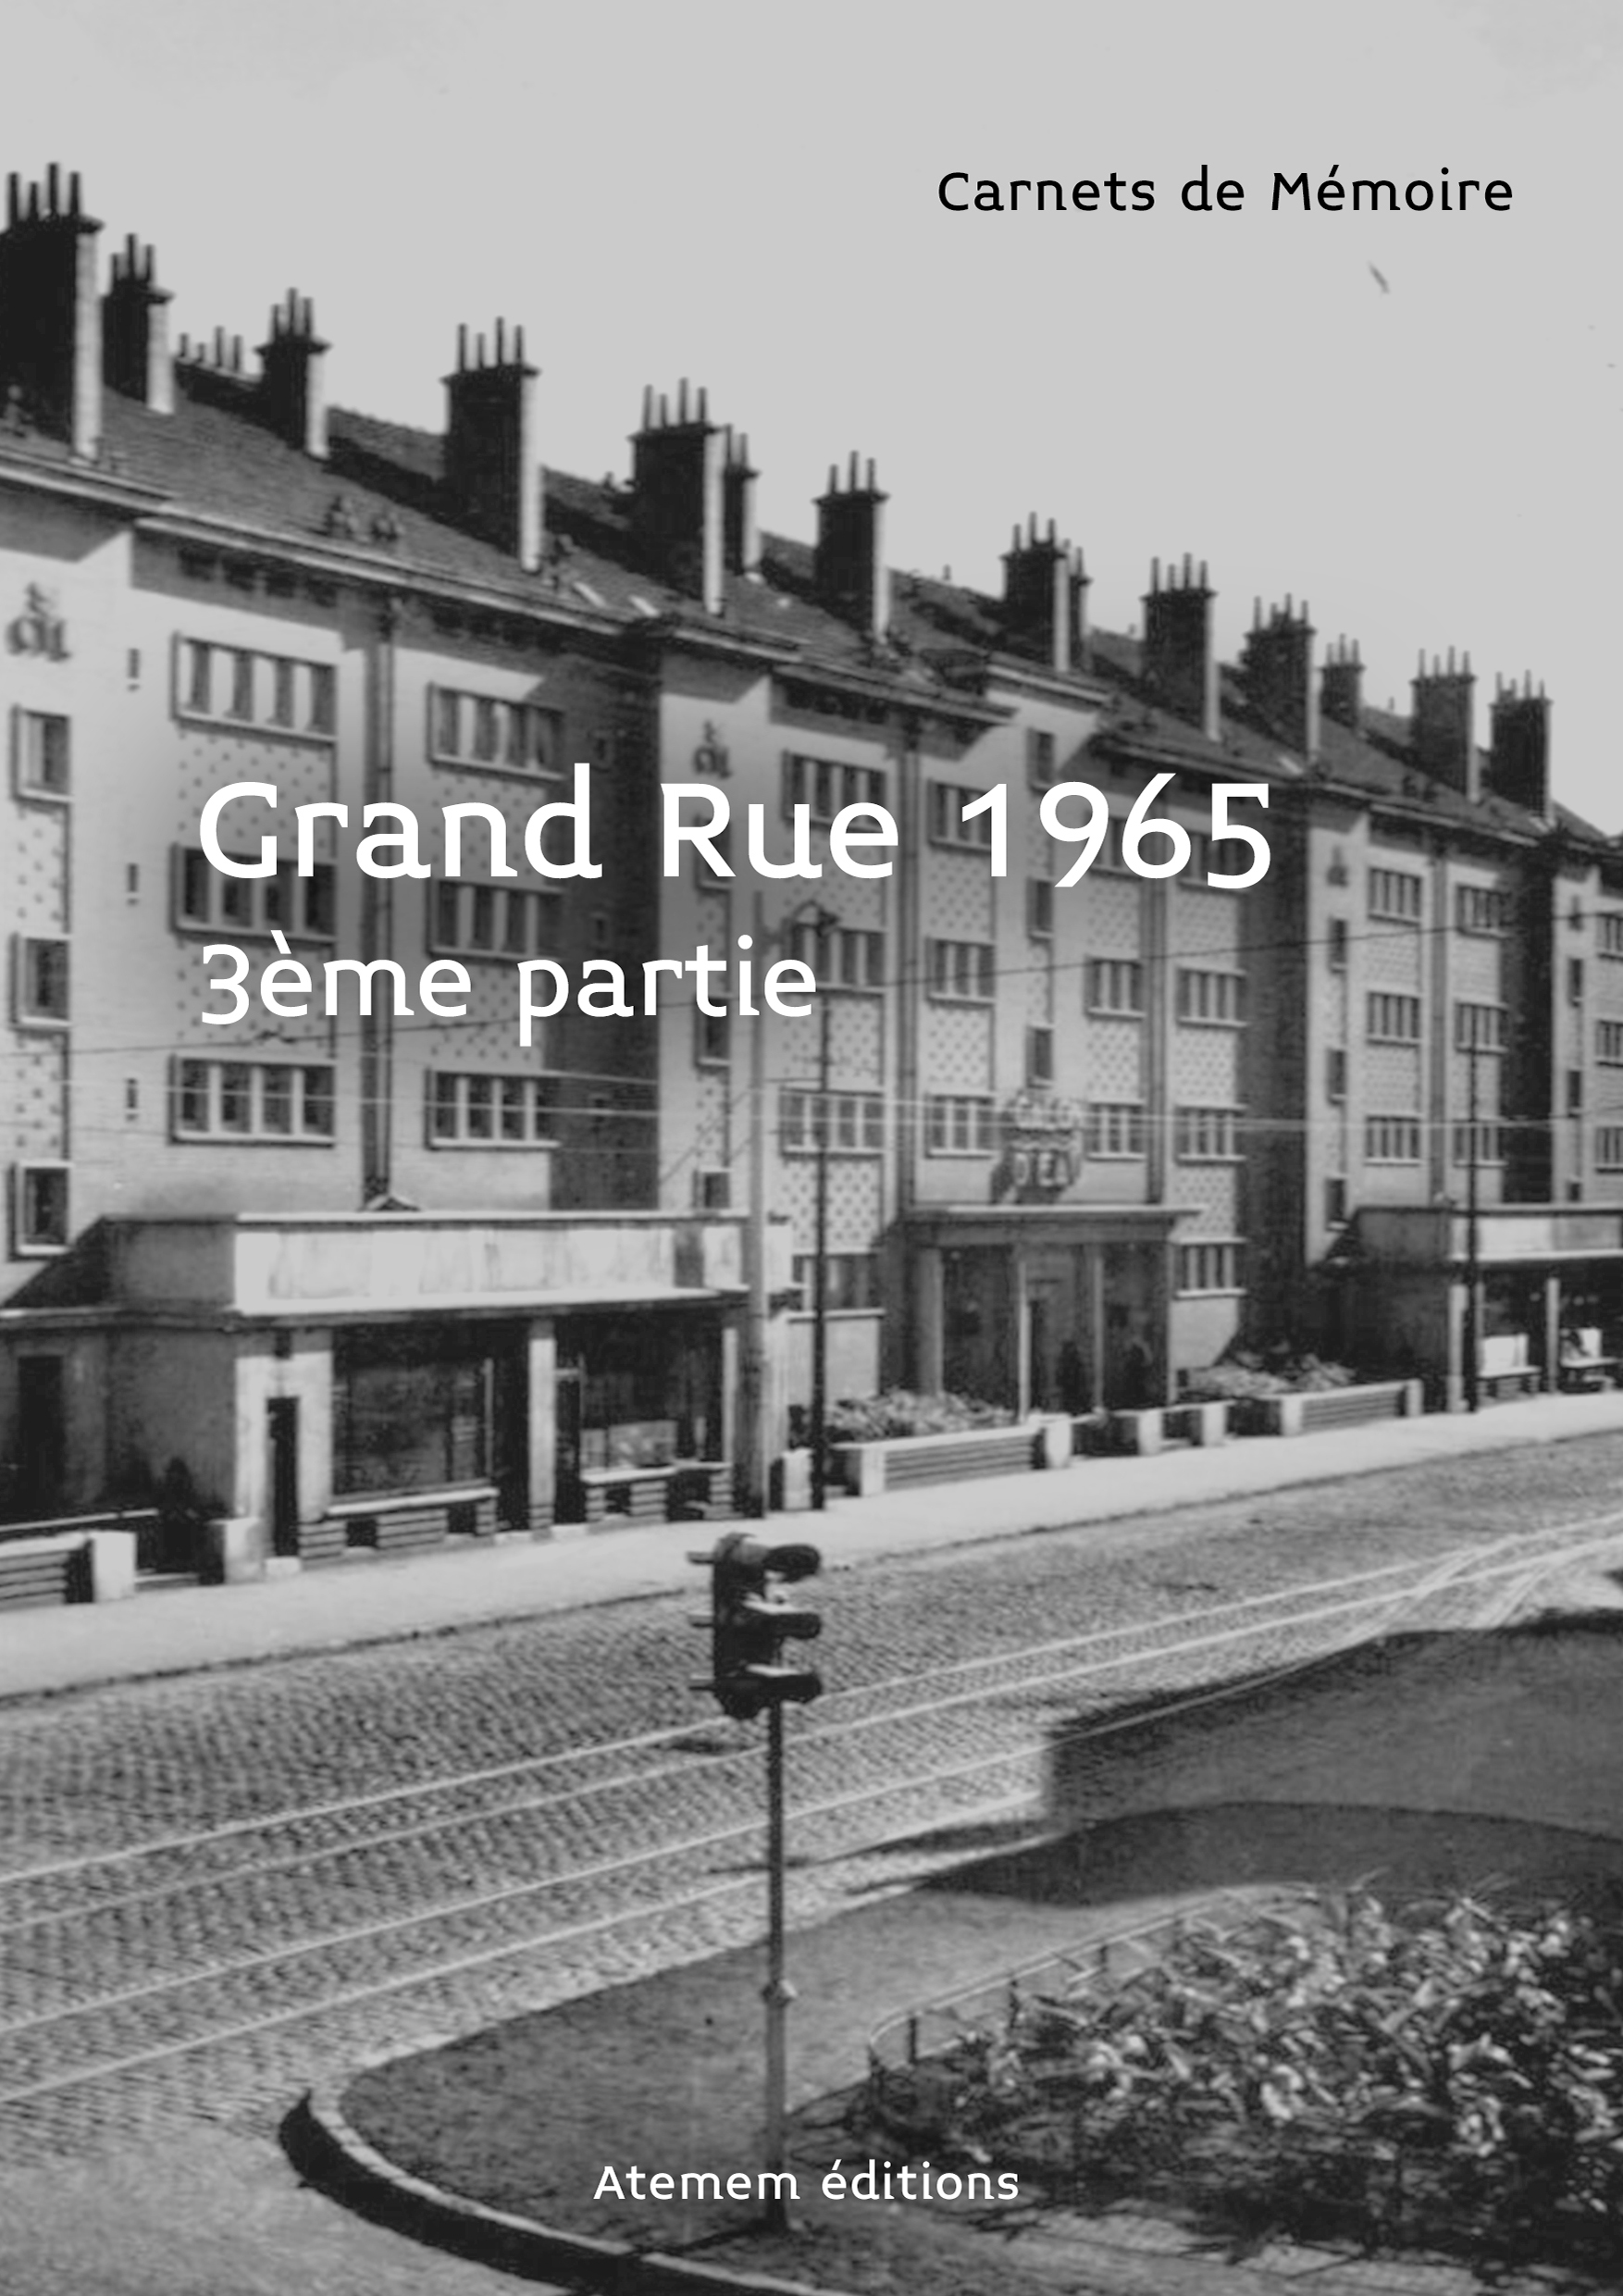 Grand Rue 3eme partie